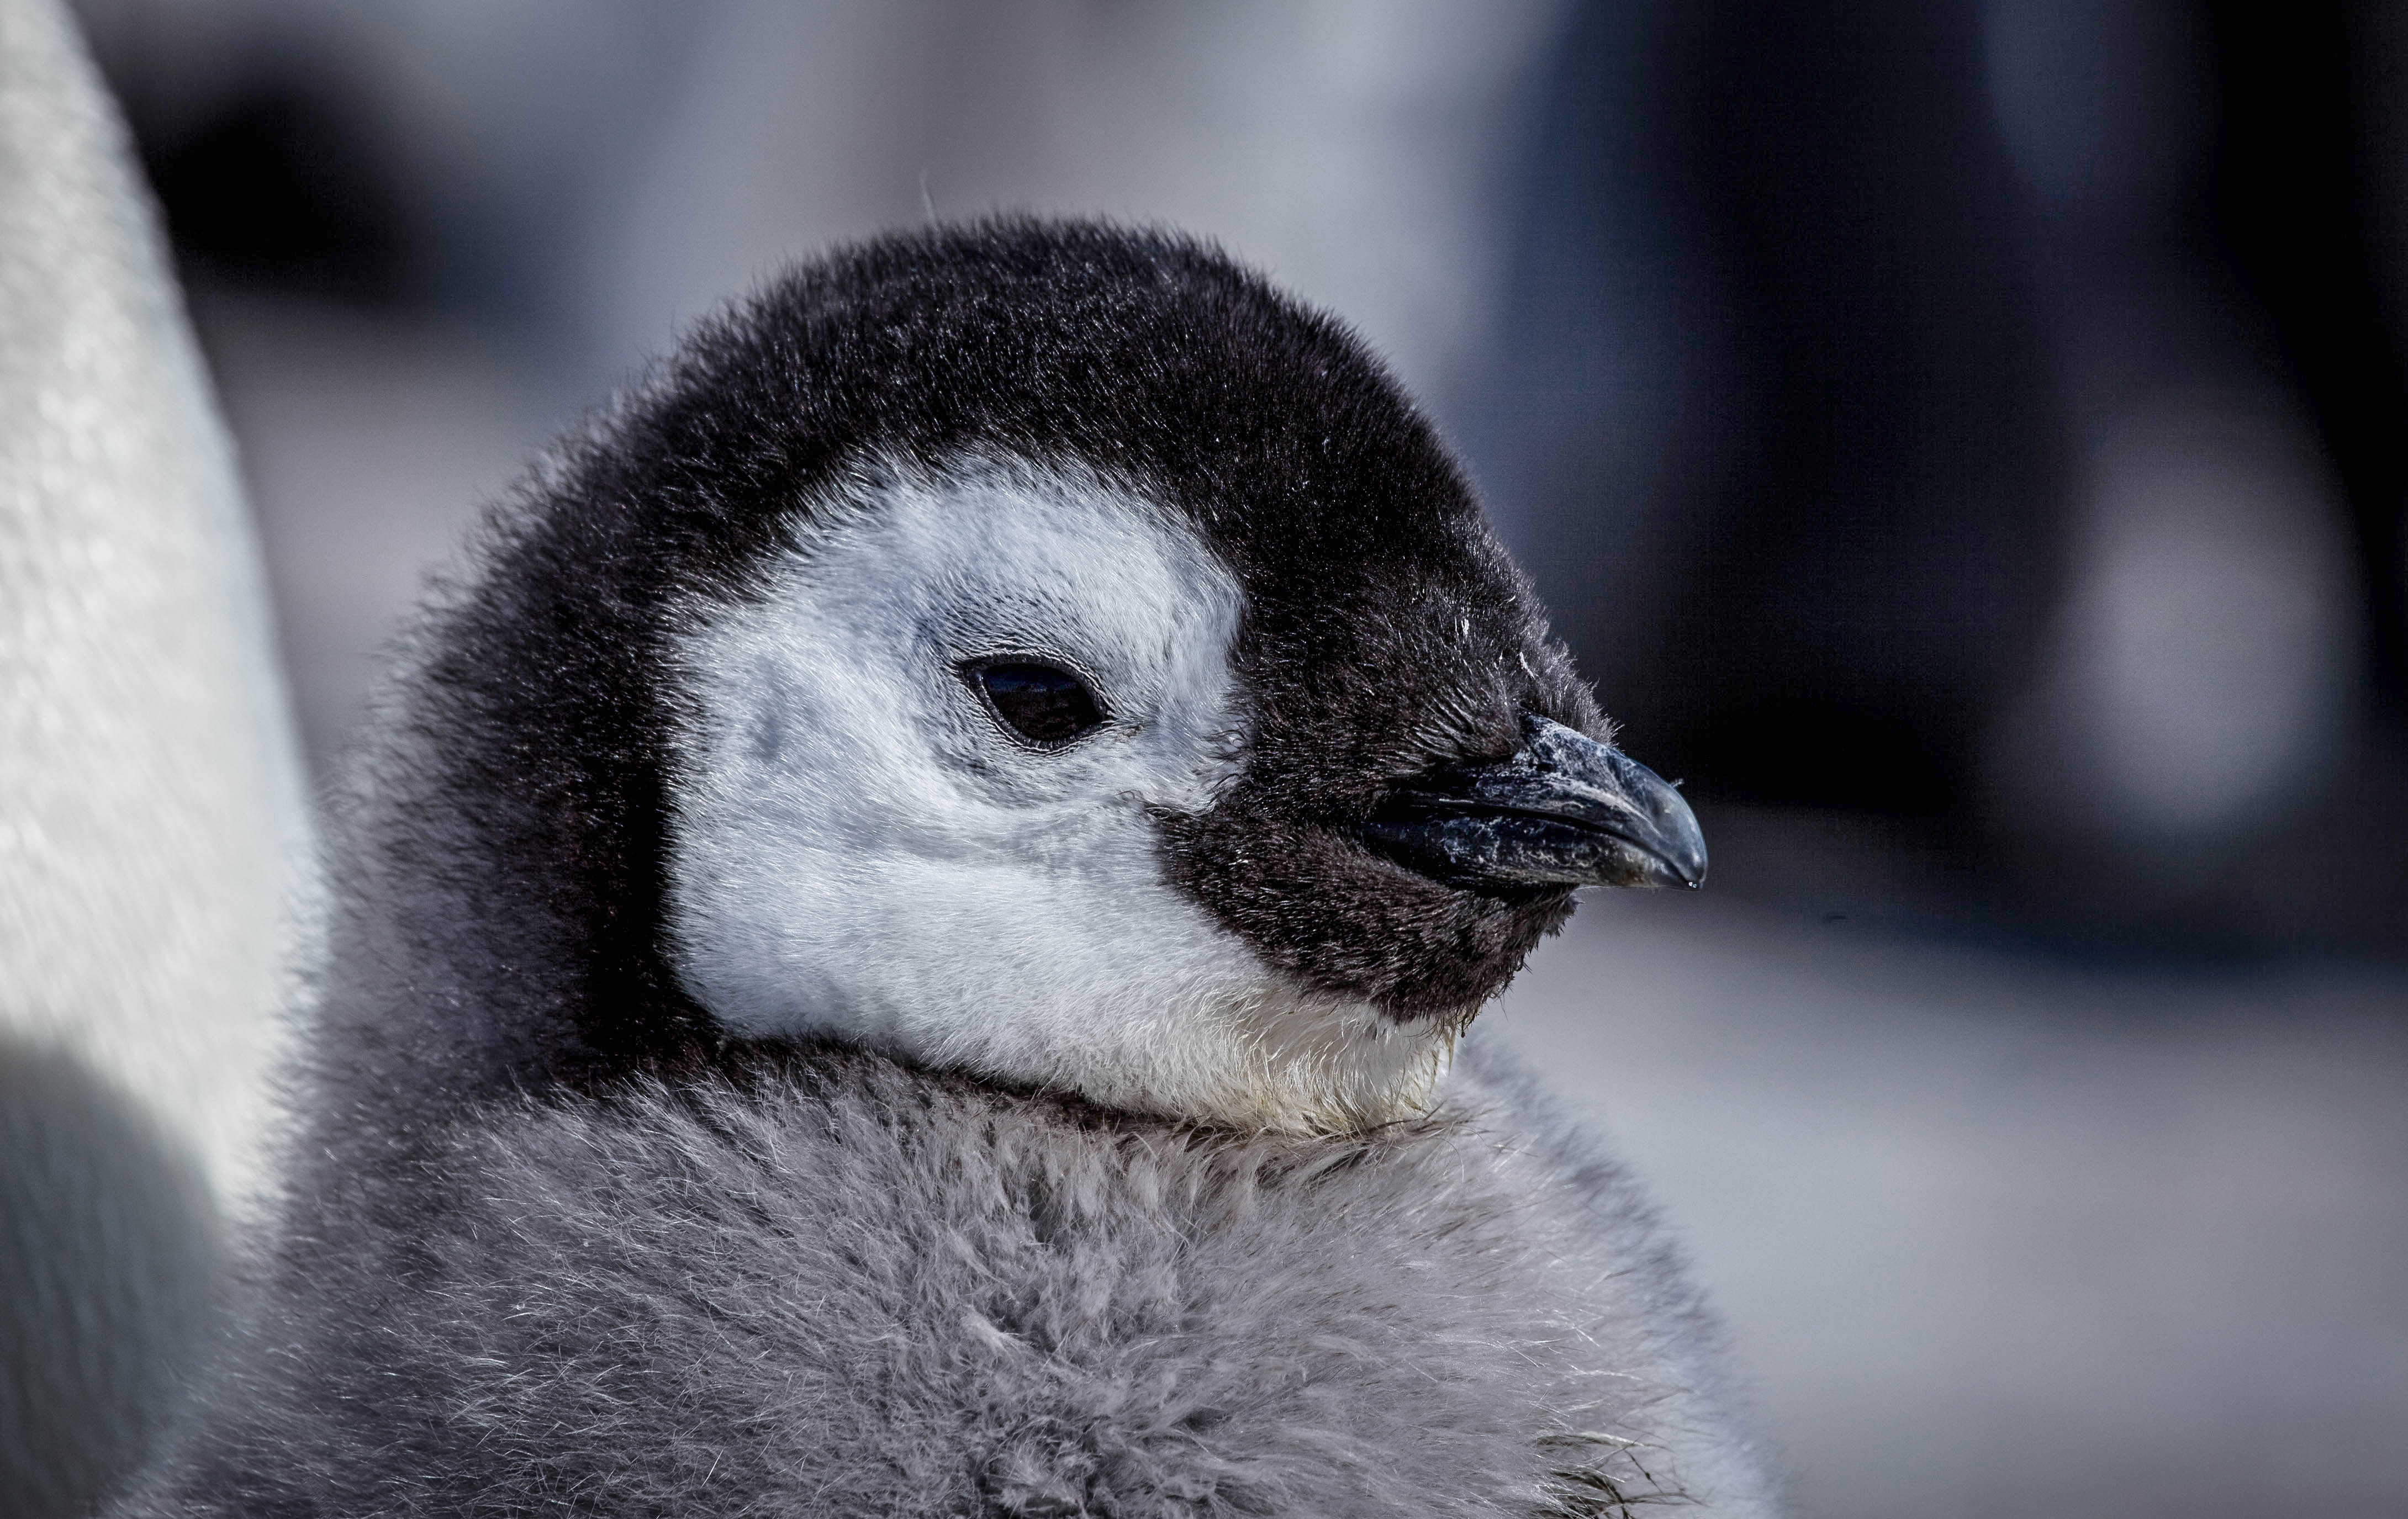 Snežné vtáča - príbeh malého tučniaka